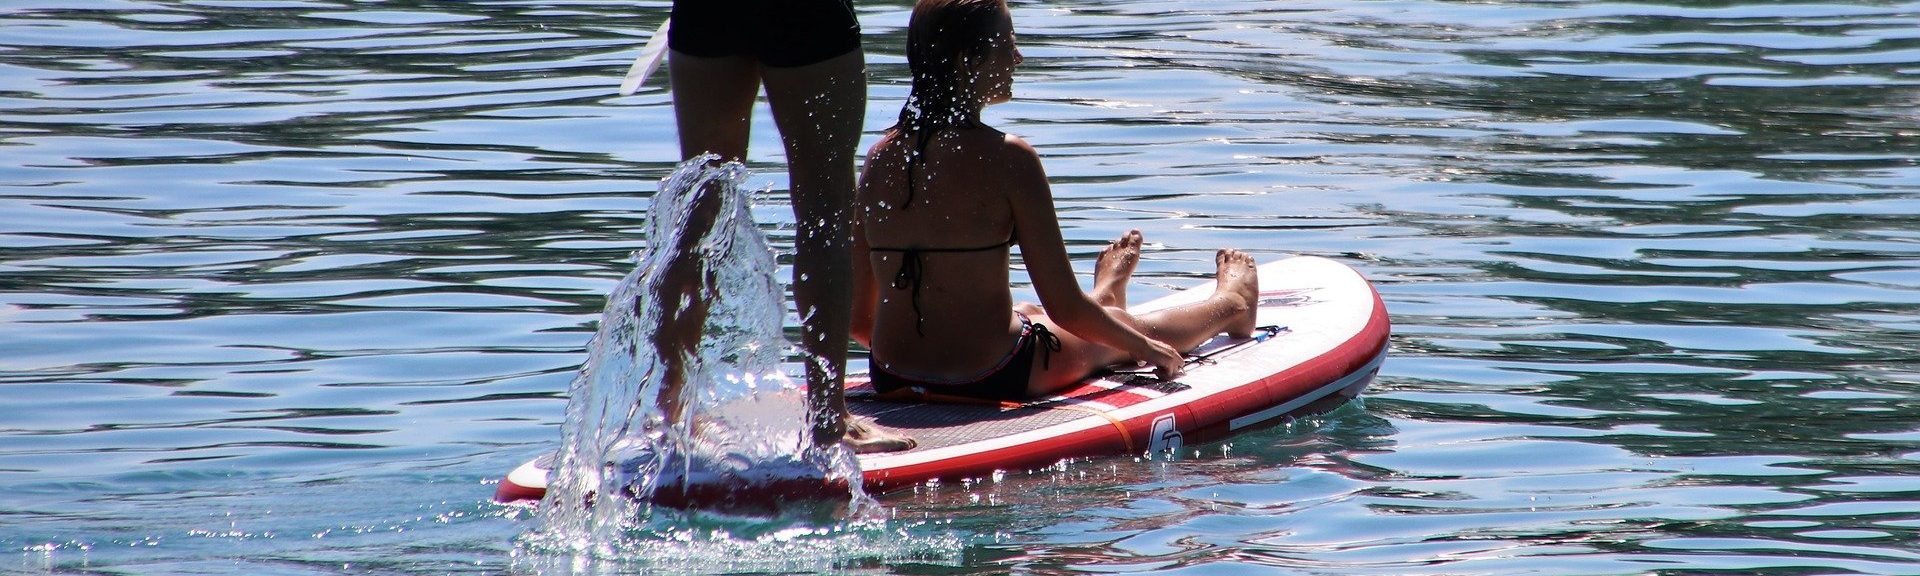 Twee personen op een supboard